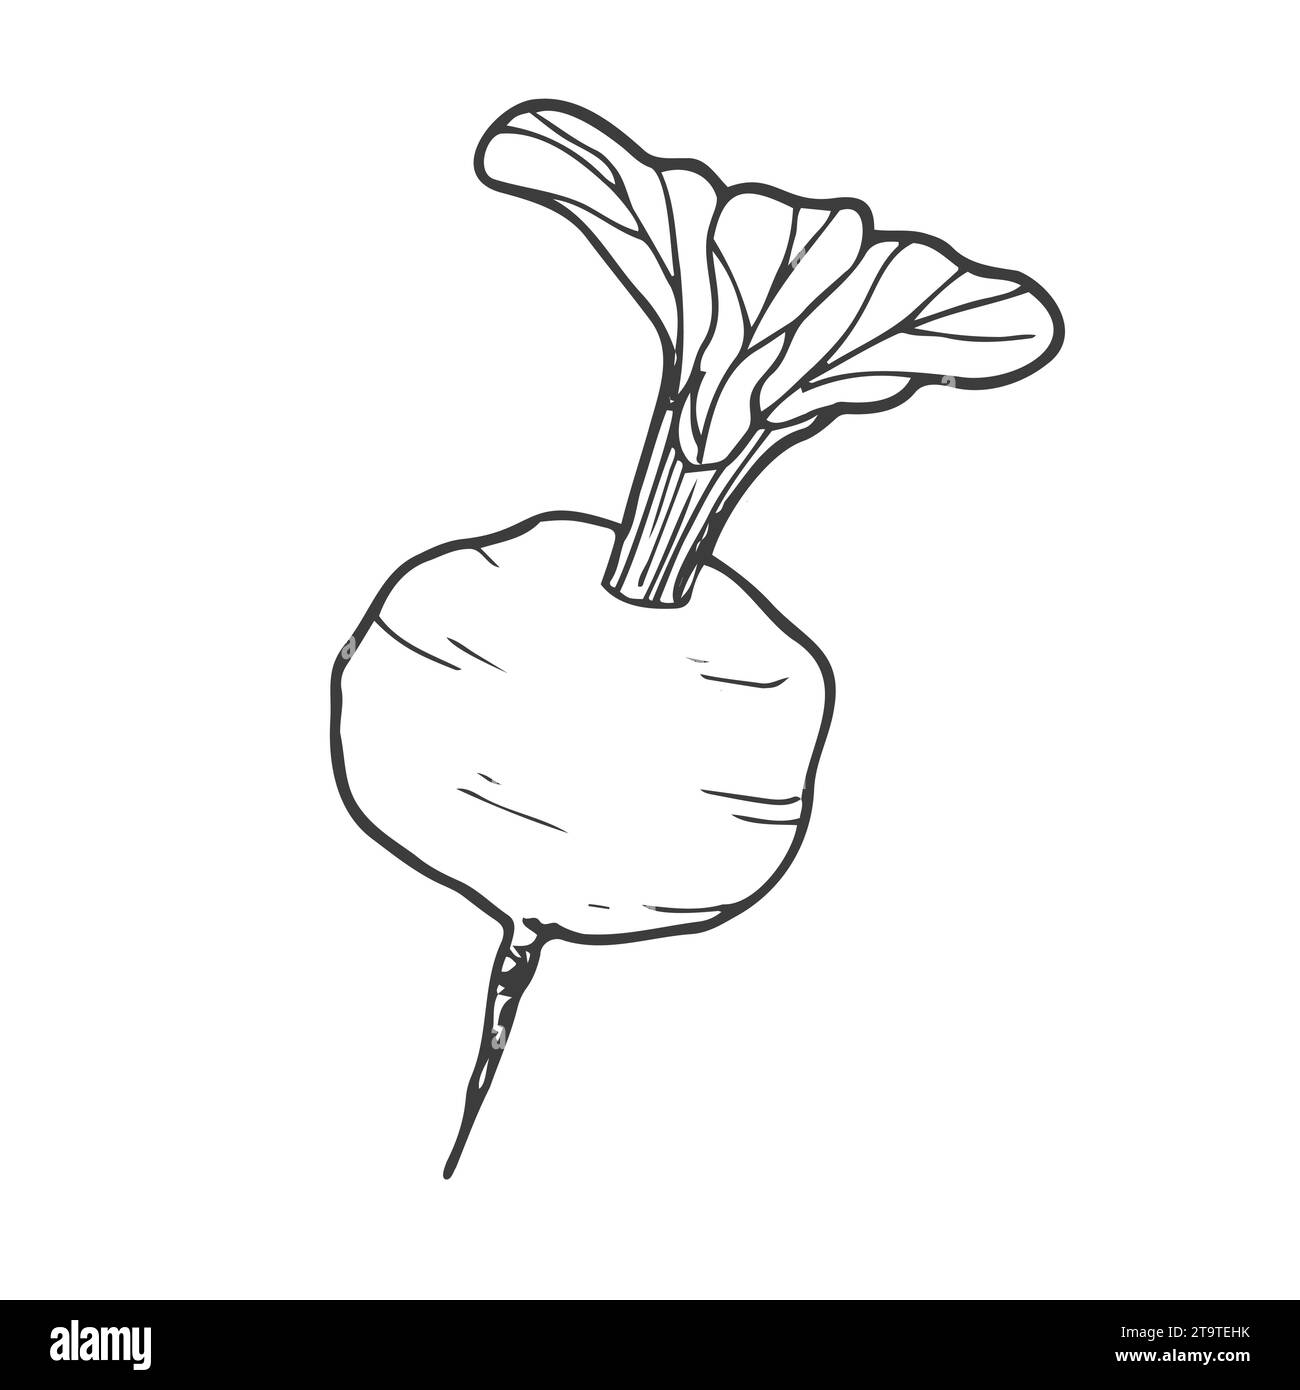 Vecteur isolé incolore lignée noire betterave, radis, navets, légumes-racines simple Illustration de Vecteur